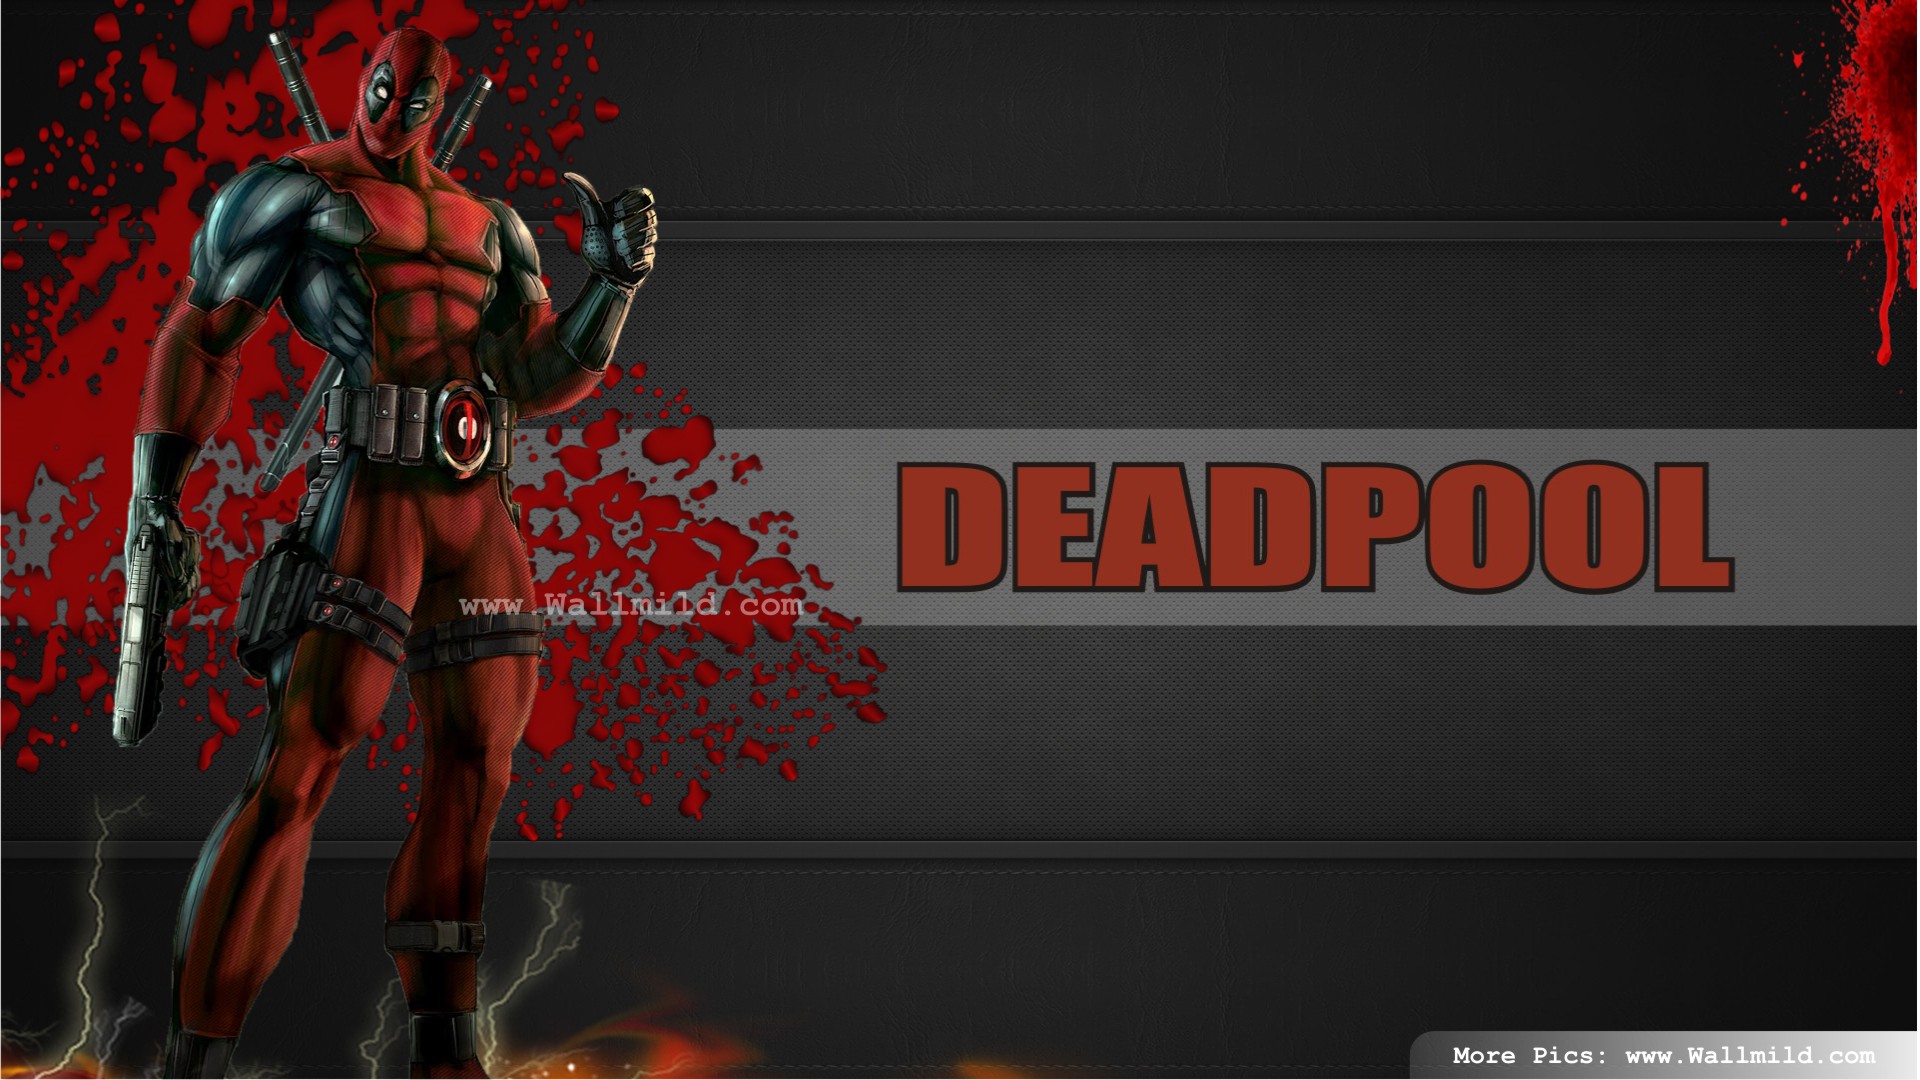 Deadpool Movie Wallpaper Hd